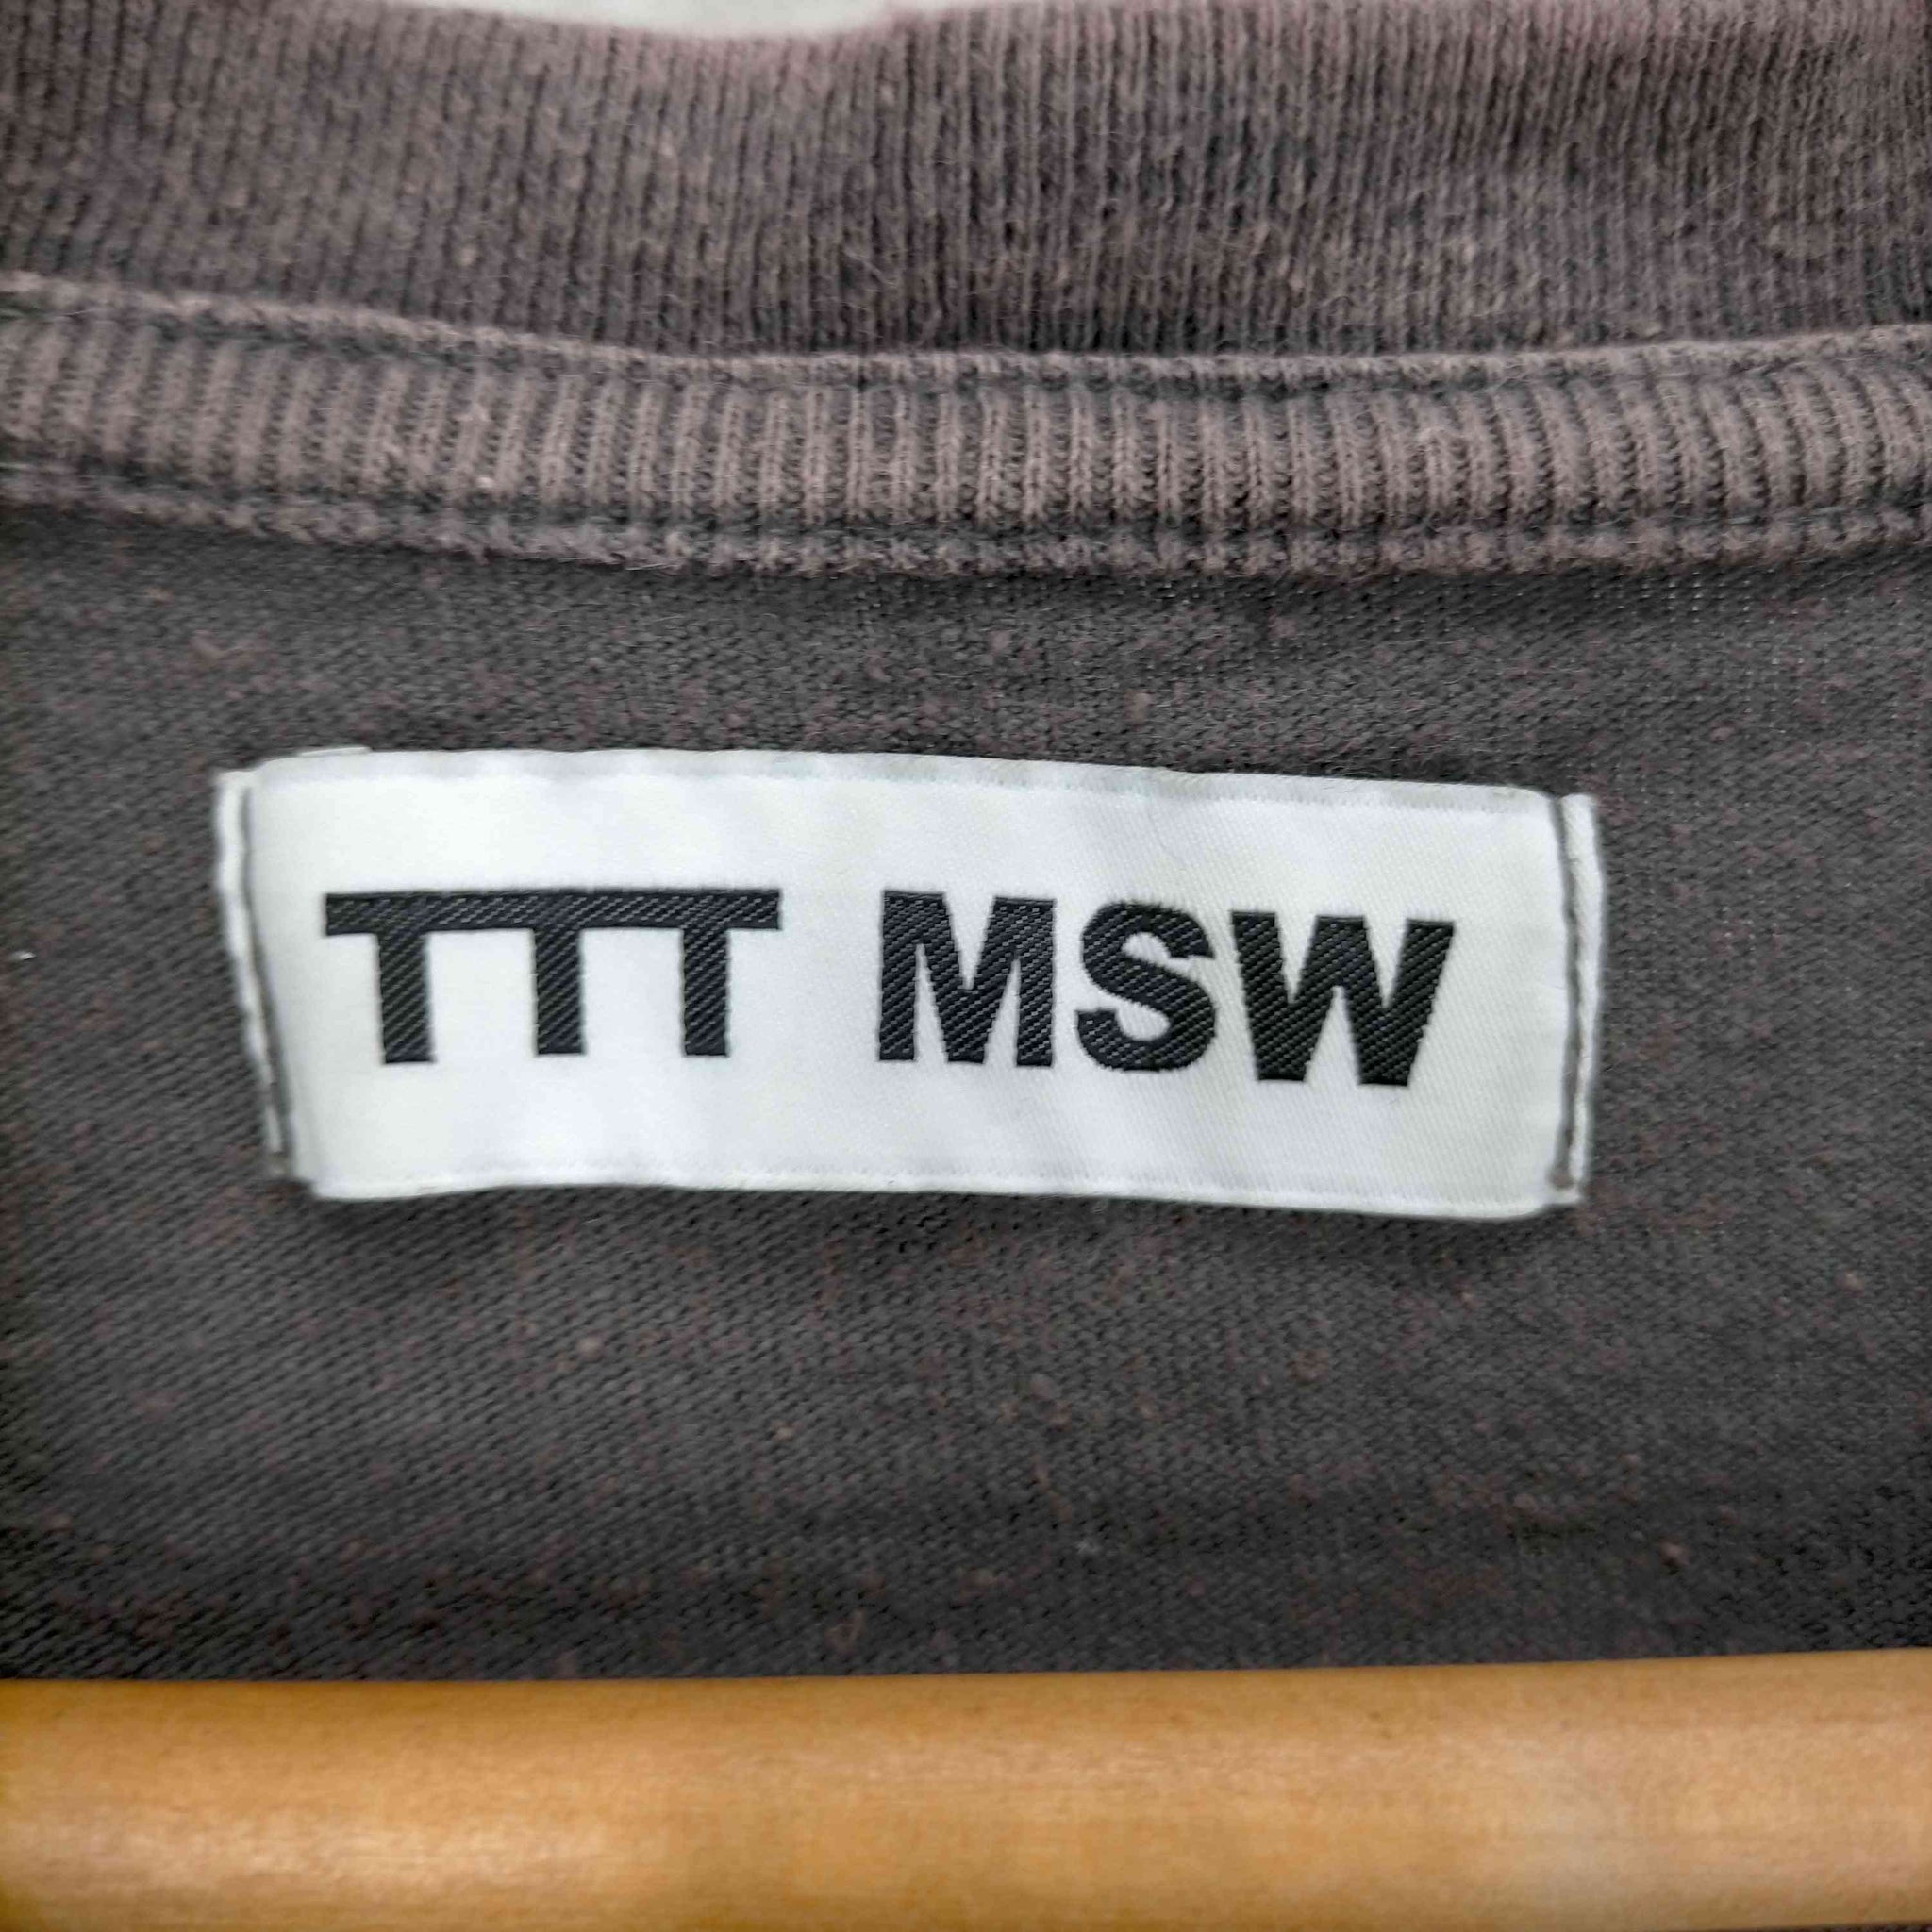 TTT_MSW(ティーモダンストリートウエア)23AW T-SHIRT ダメージ加工